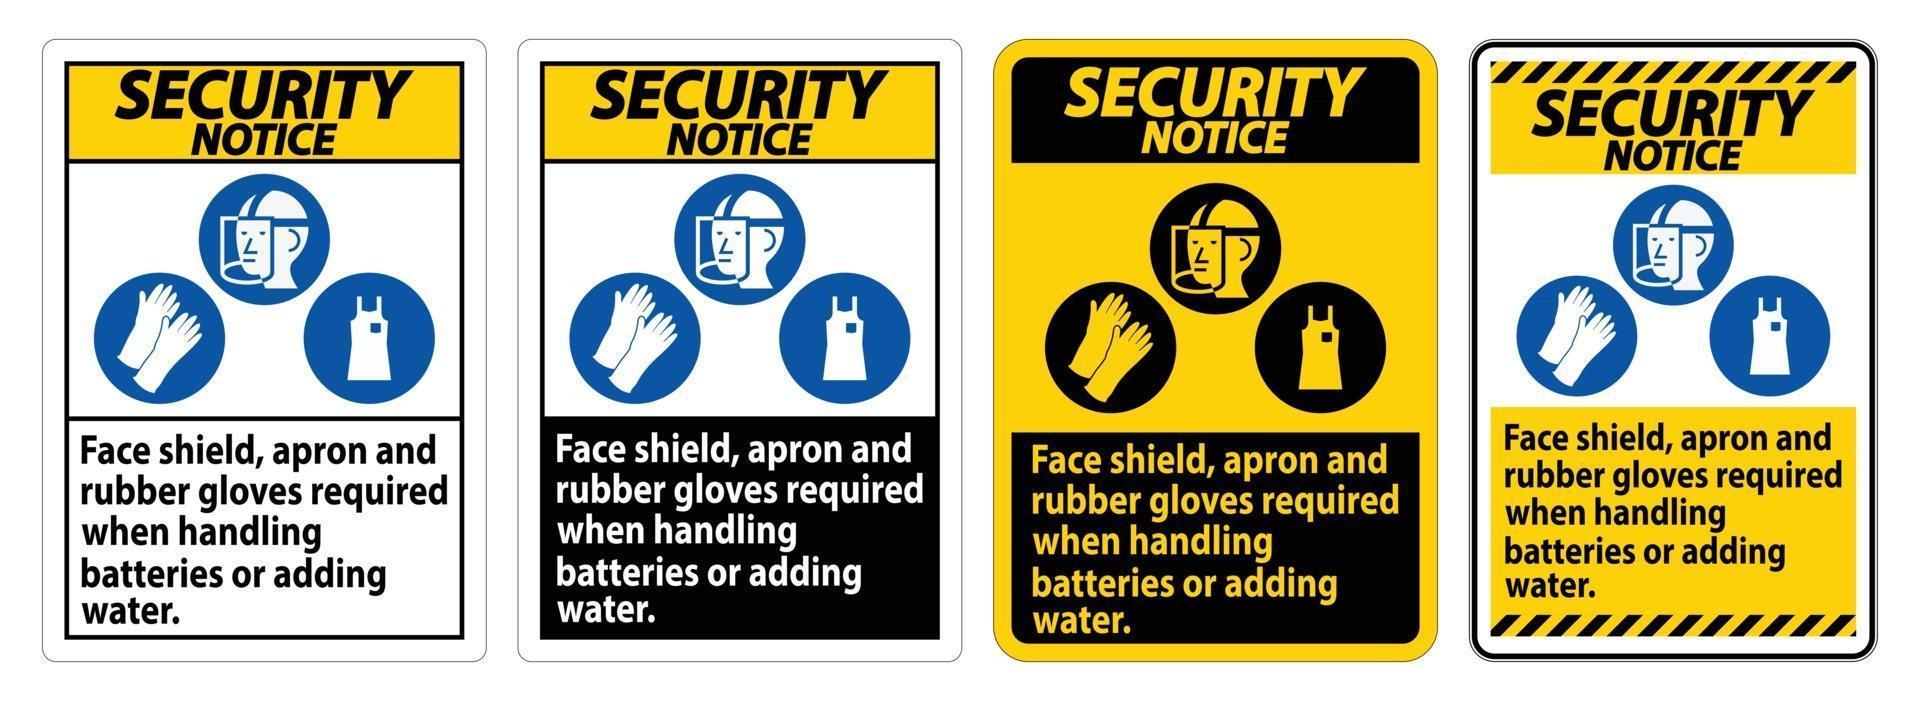 Sinal de aviso de segurança protetor facial, avental e luvas de borracha necessários ao manusear baterias ou adicionar água com símbolos de ppe vetor